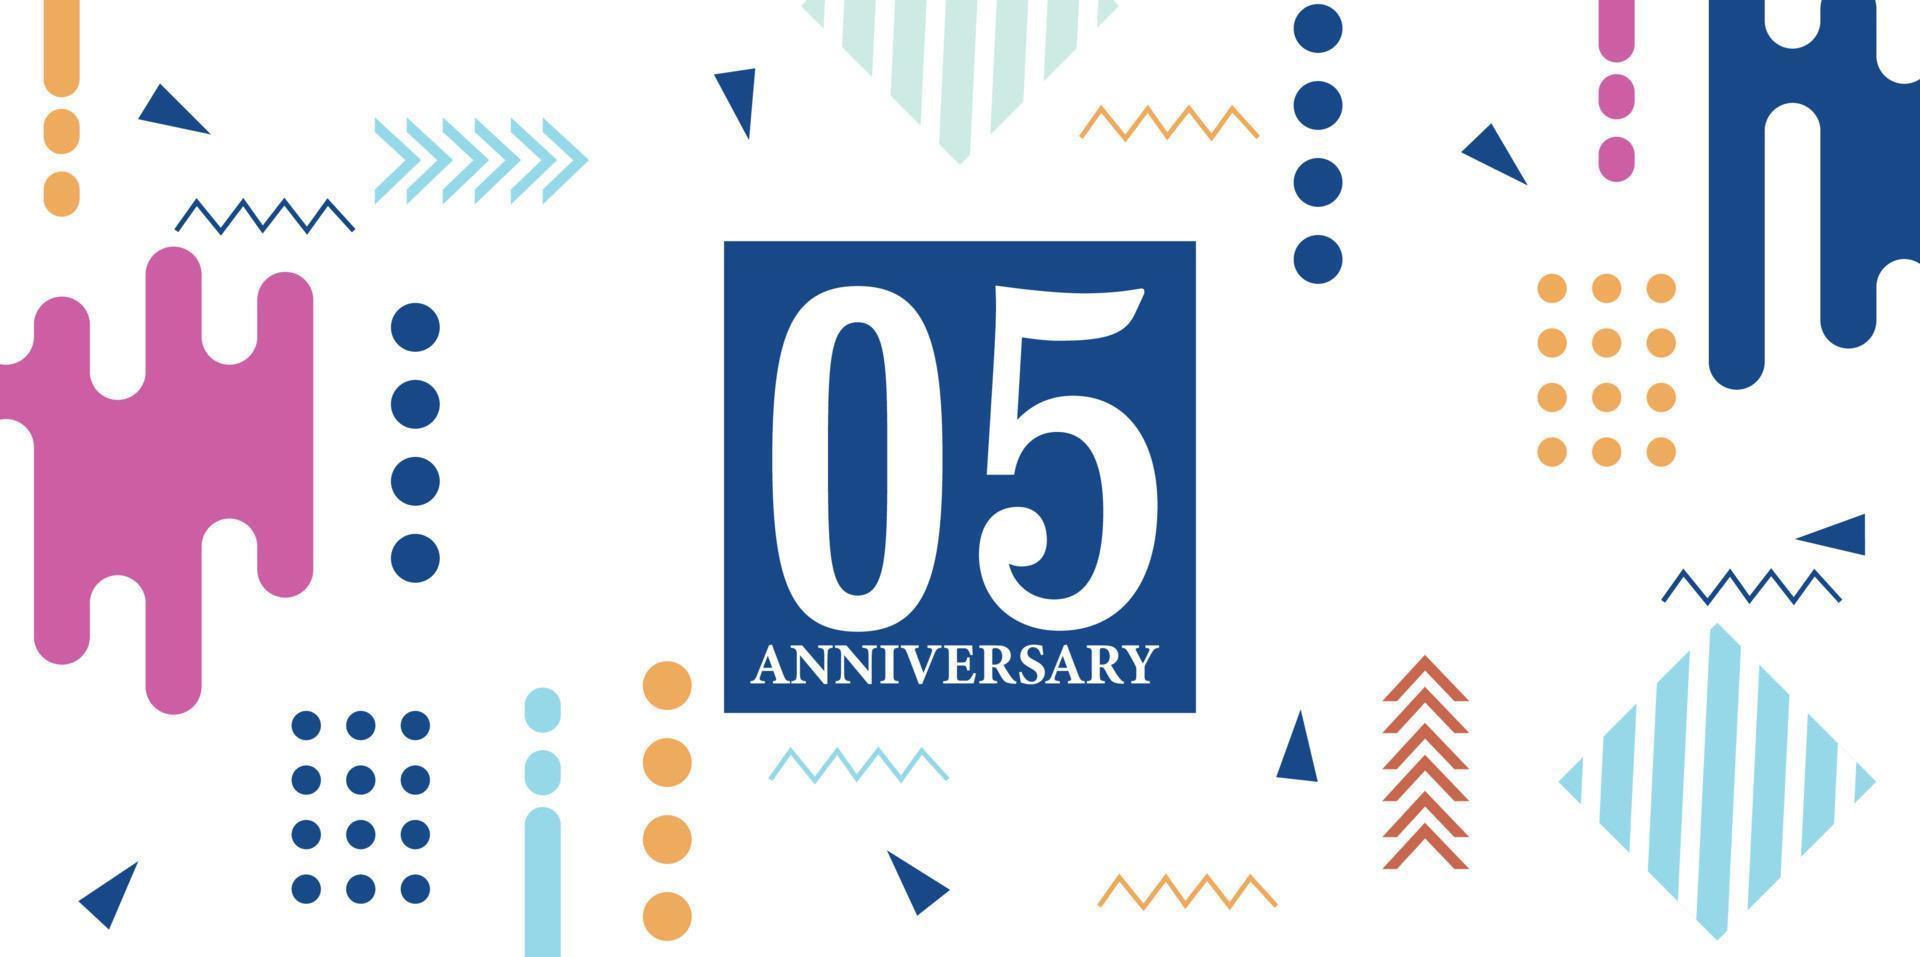 05 Jahre Jahrestag Feier Logo Weiß Zahlen Schriftart im Blau gestalten mit bunt abstrakt Design auf Weiß Hintergrund Vektor Illustration